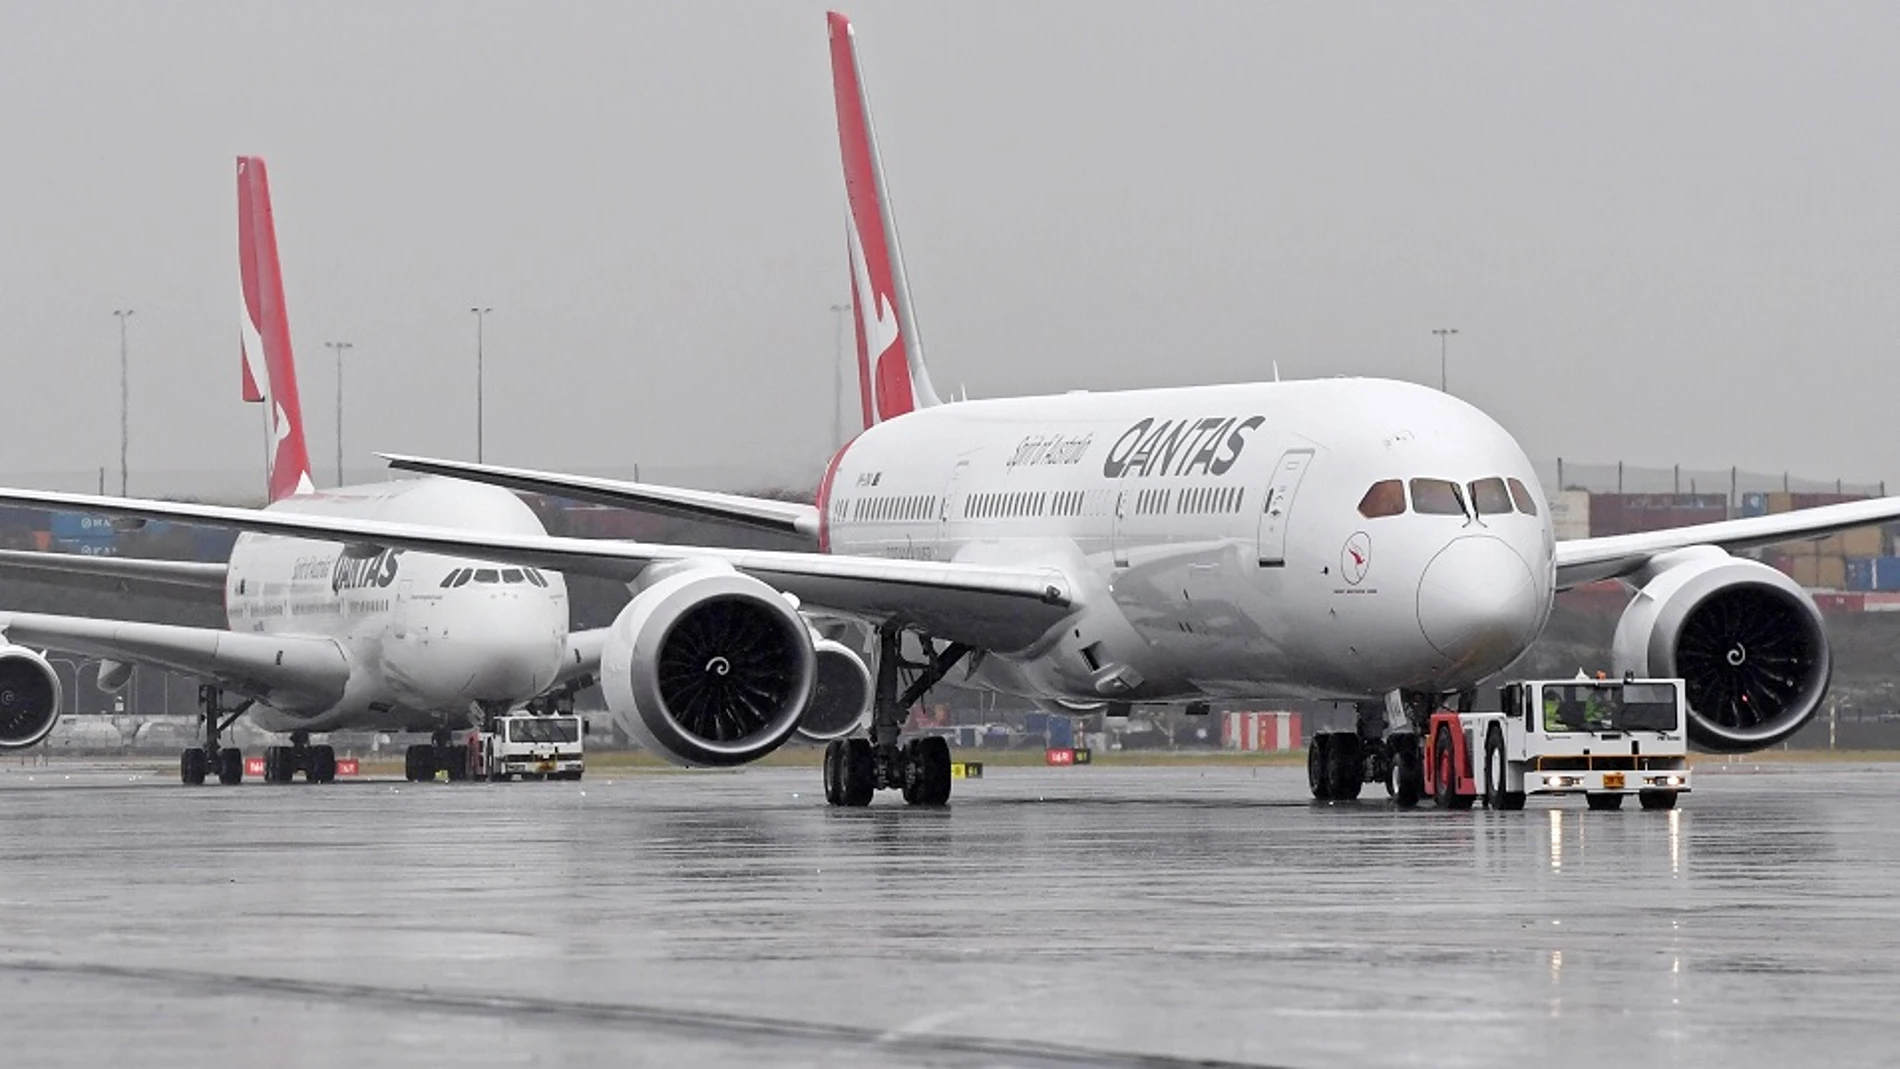 Imagen de los aviones Boeing 737 de la aerolínea Qantas